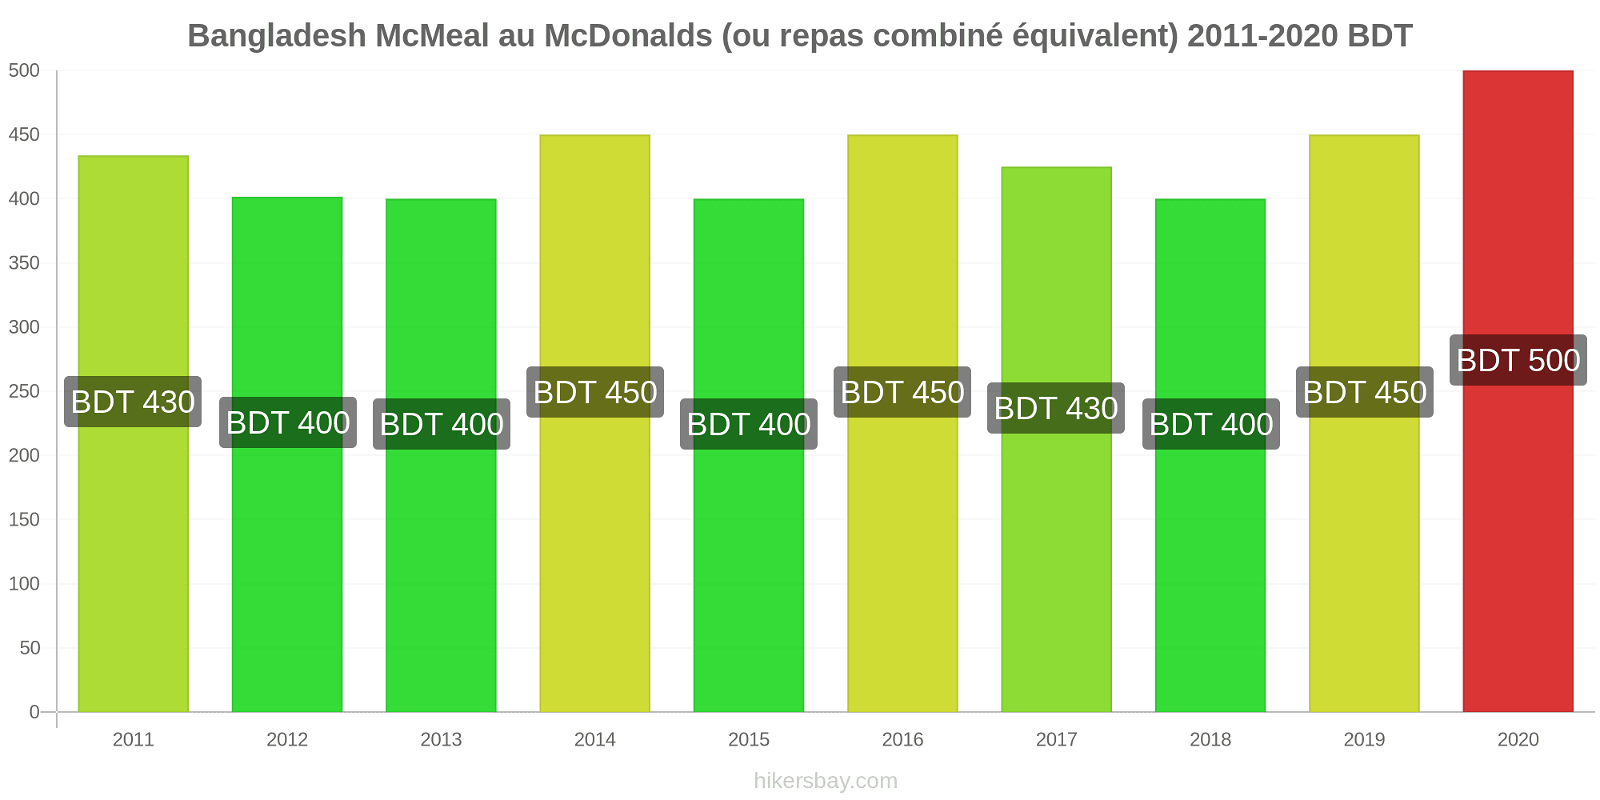 Bangladesh changements de prix McMeal à McDonald ' s (ou Combo équivalent tourteau) hikersbay.com